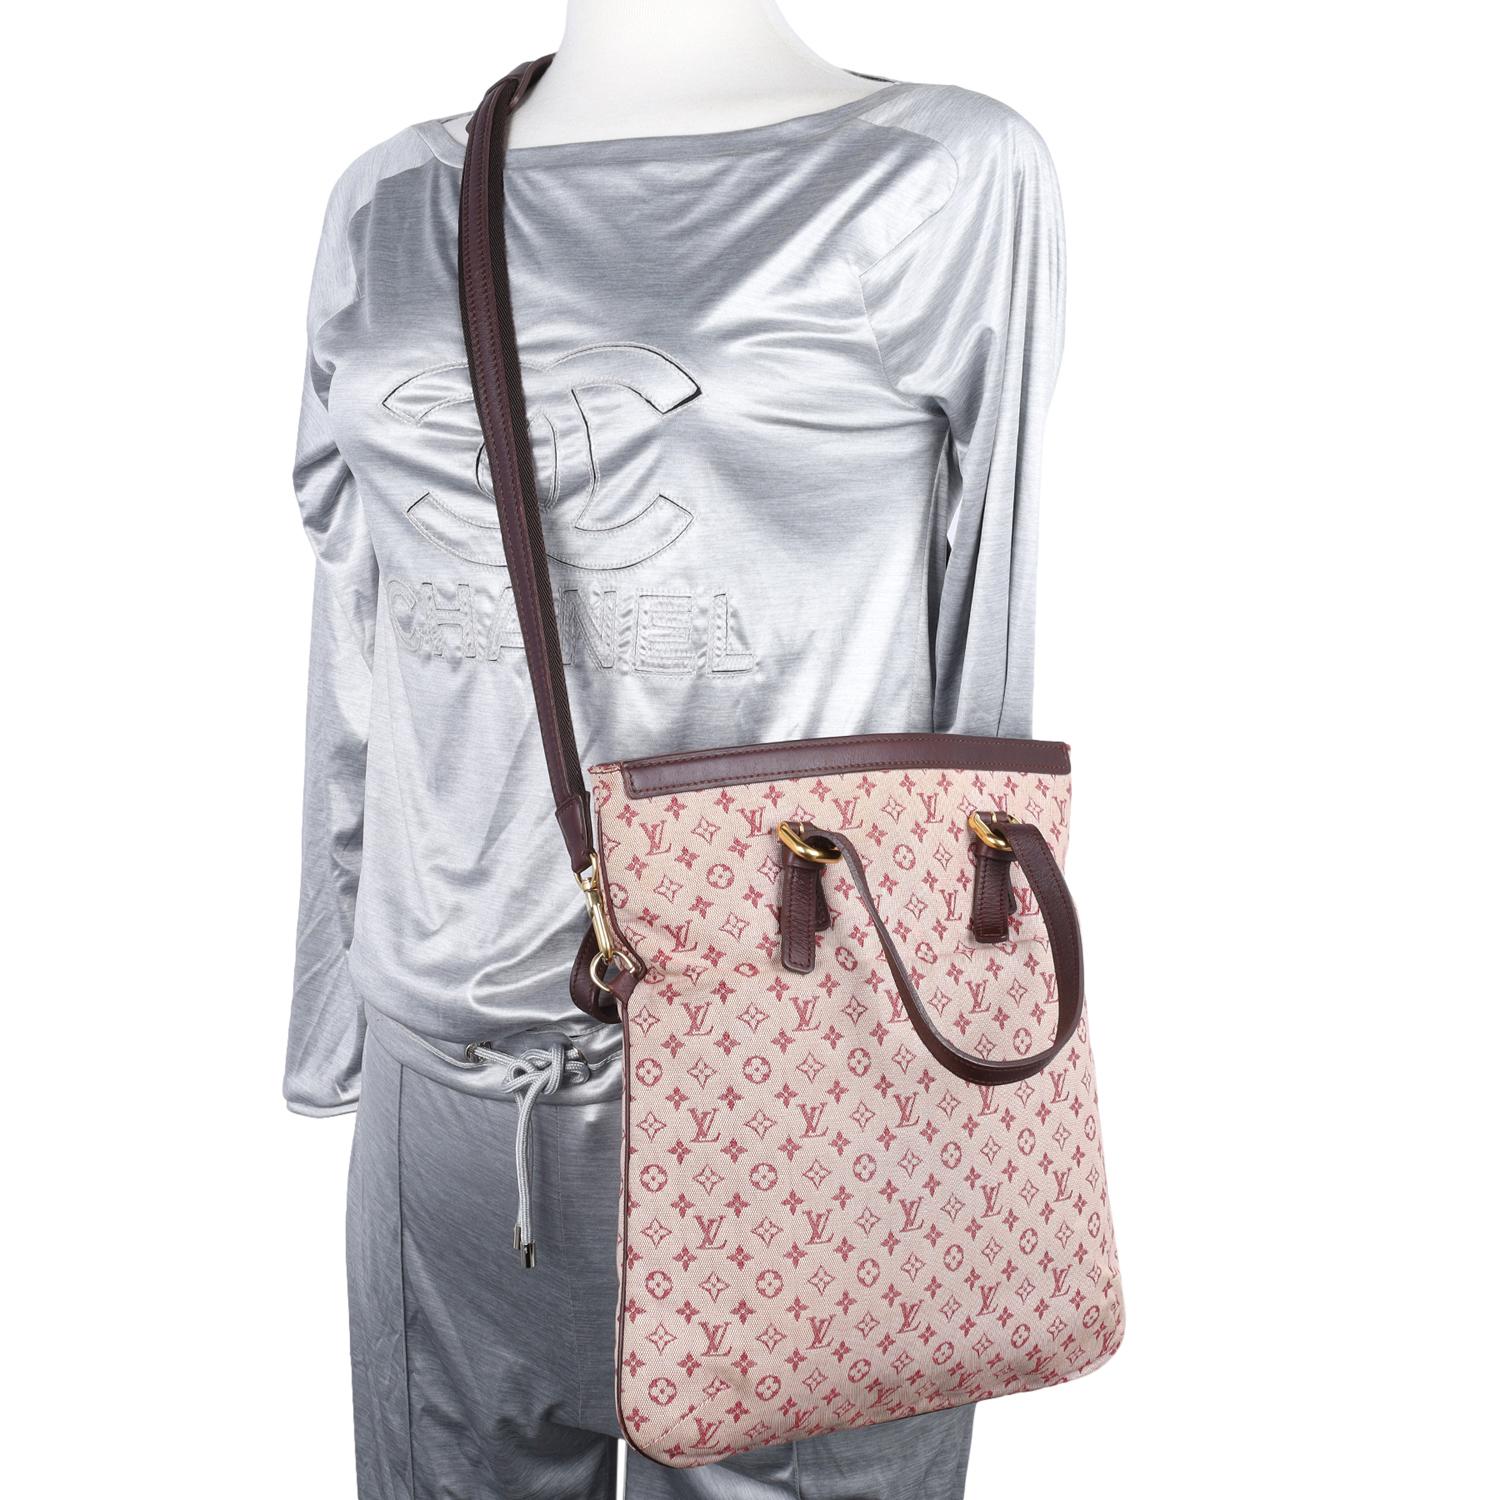 Authentische, gebrauchte Louis Vuitton Maroon Mini Lin Francoise Umhängetasche. Die perfekte Tagestasche für die Reise. Enthält 2 unterschiedlich große Riemen, die als unterschiedlich lange Schultertaschen verwendet werden können. Mit